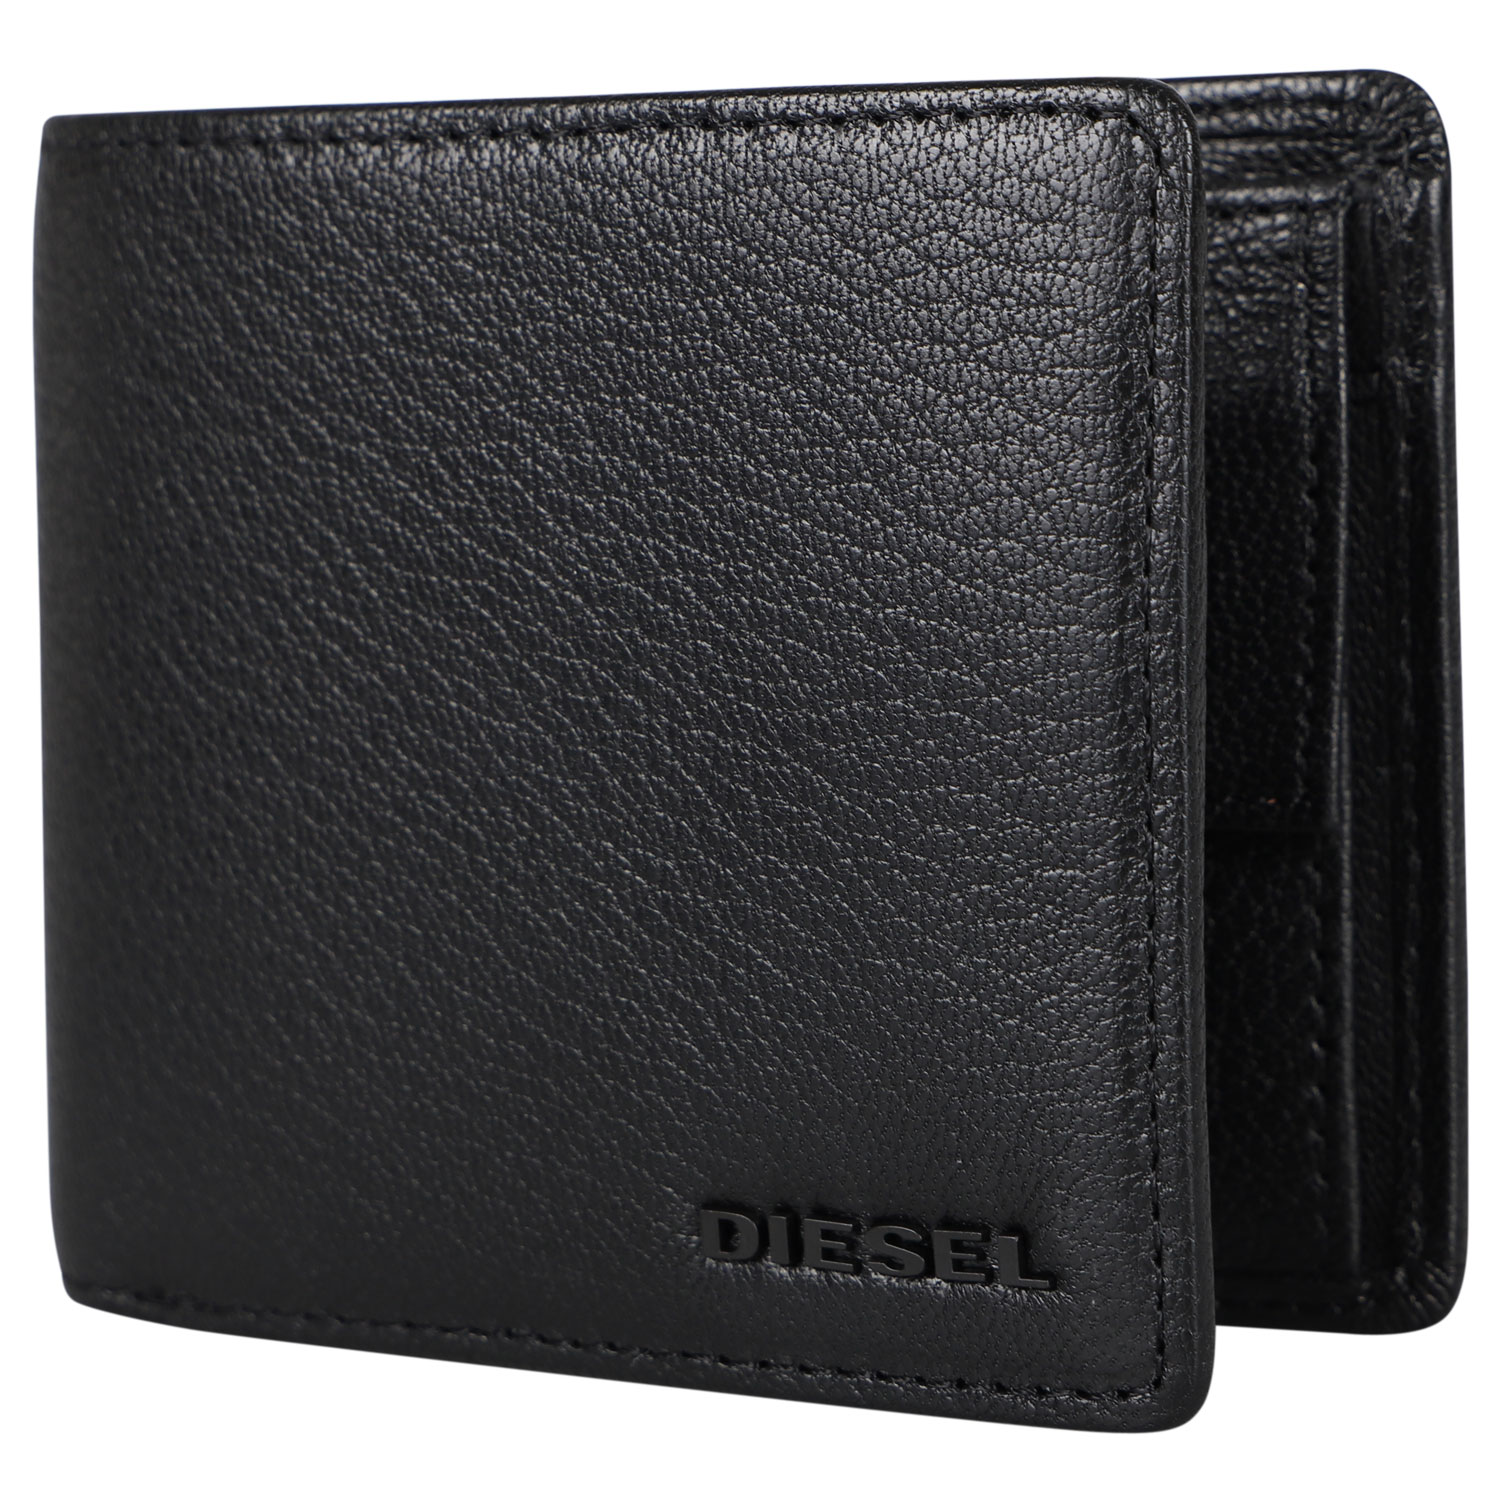 DIESEL ディーゼル 財布 二つ折り メンズ HIRESH S ブラック 黒 X06627-P0396